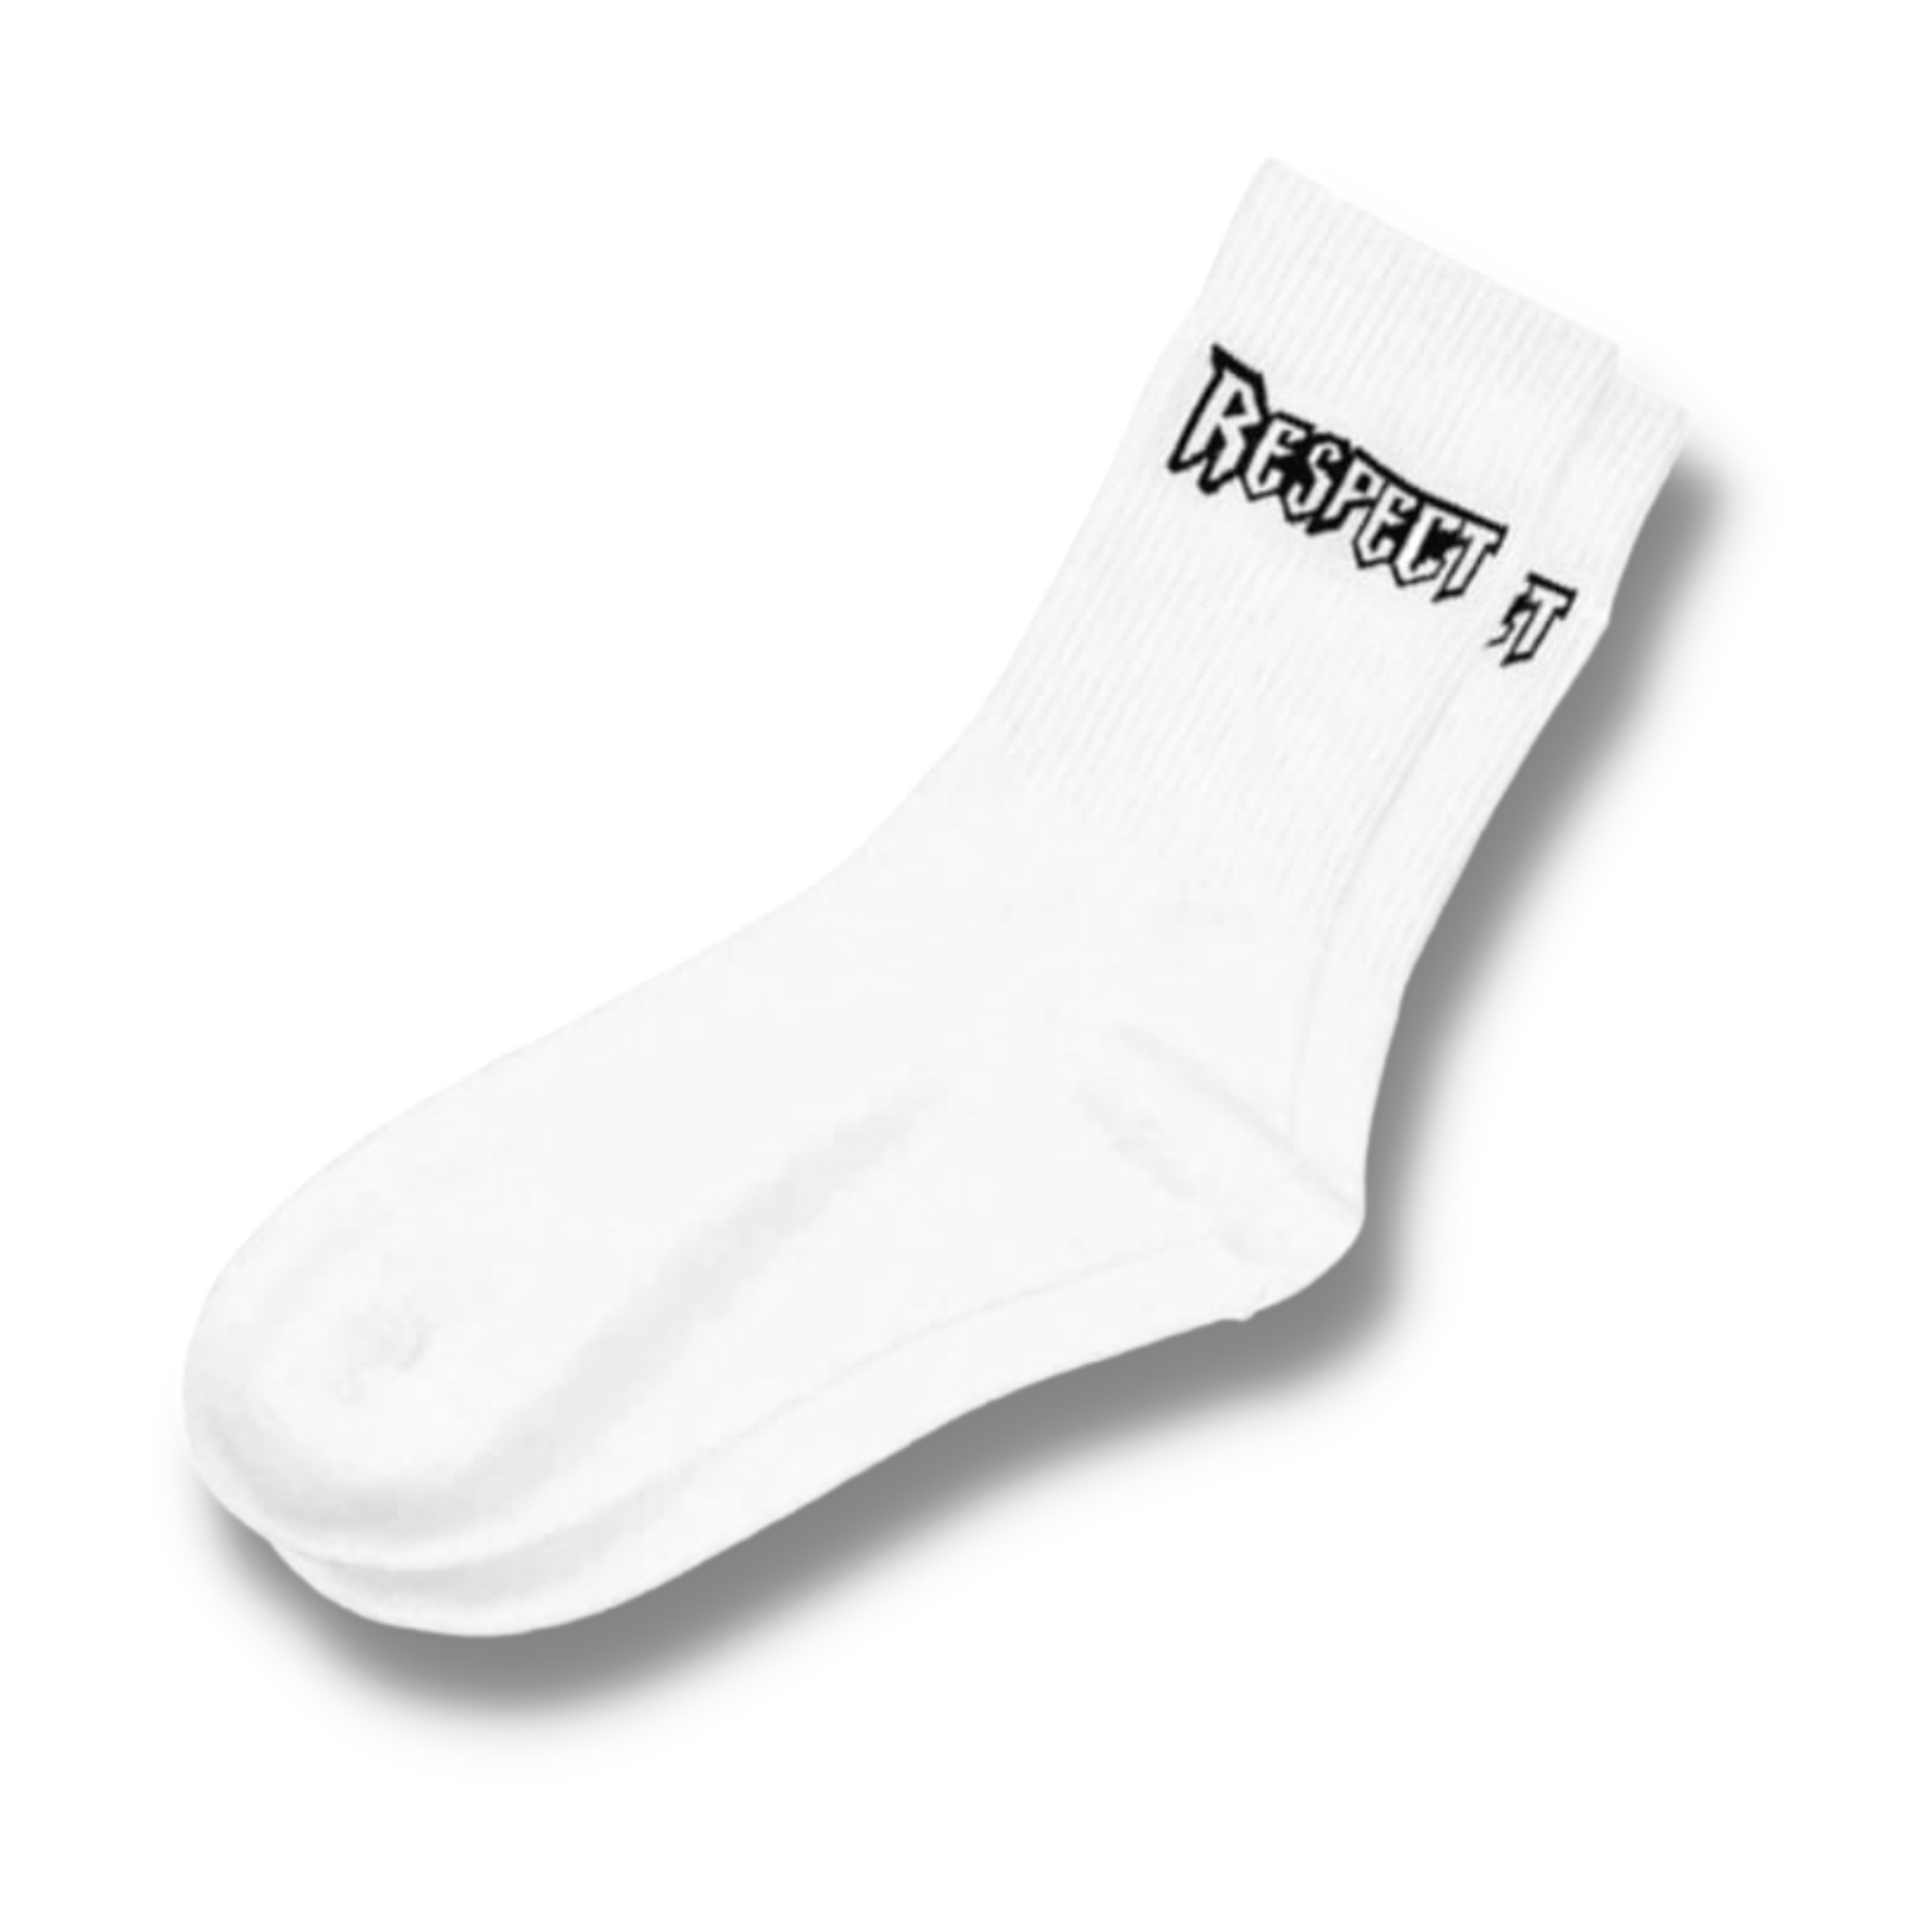 Respect Men's Socks (Size 6-10)